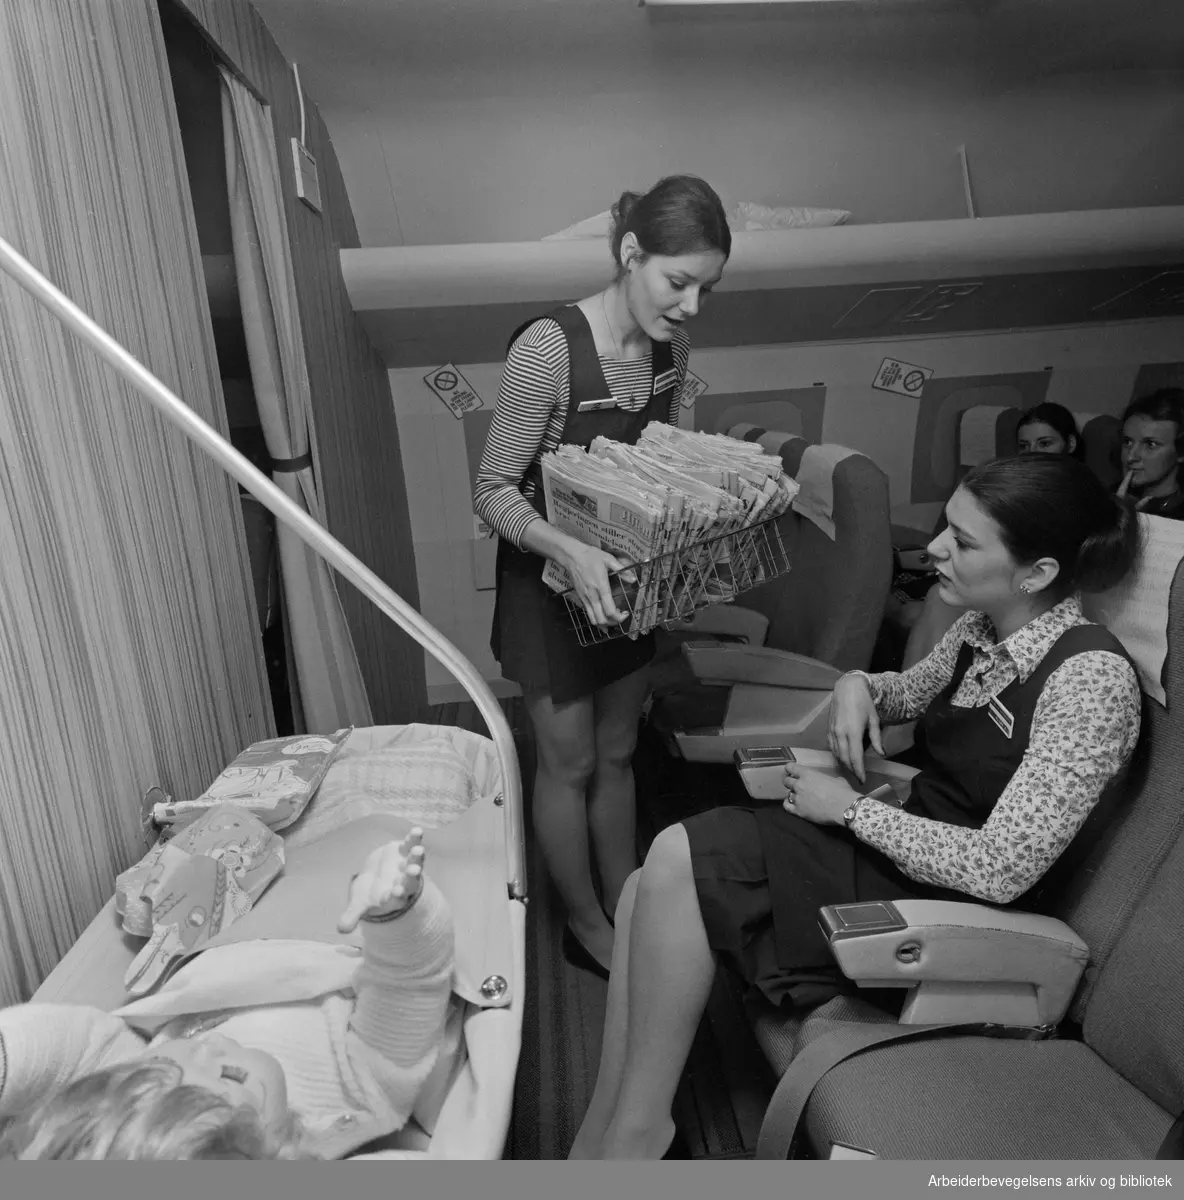 Kurs for flyvertinner i SAS på Park Hotel i Sandefjord. Undervisningen finner sted i en tro kopi av kabinen på en DC-9 i kjelleren på hotellet. April 1973.